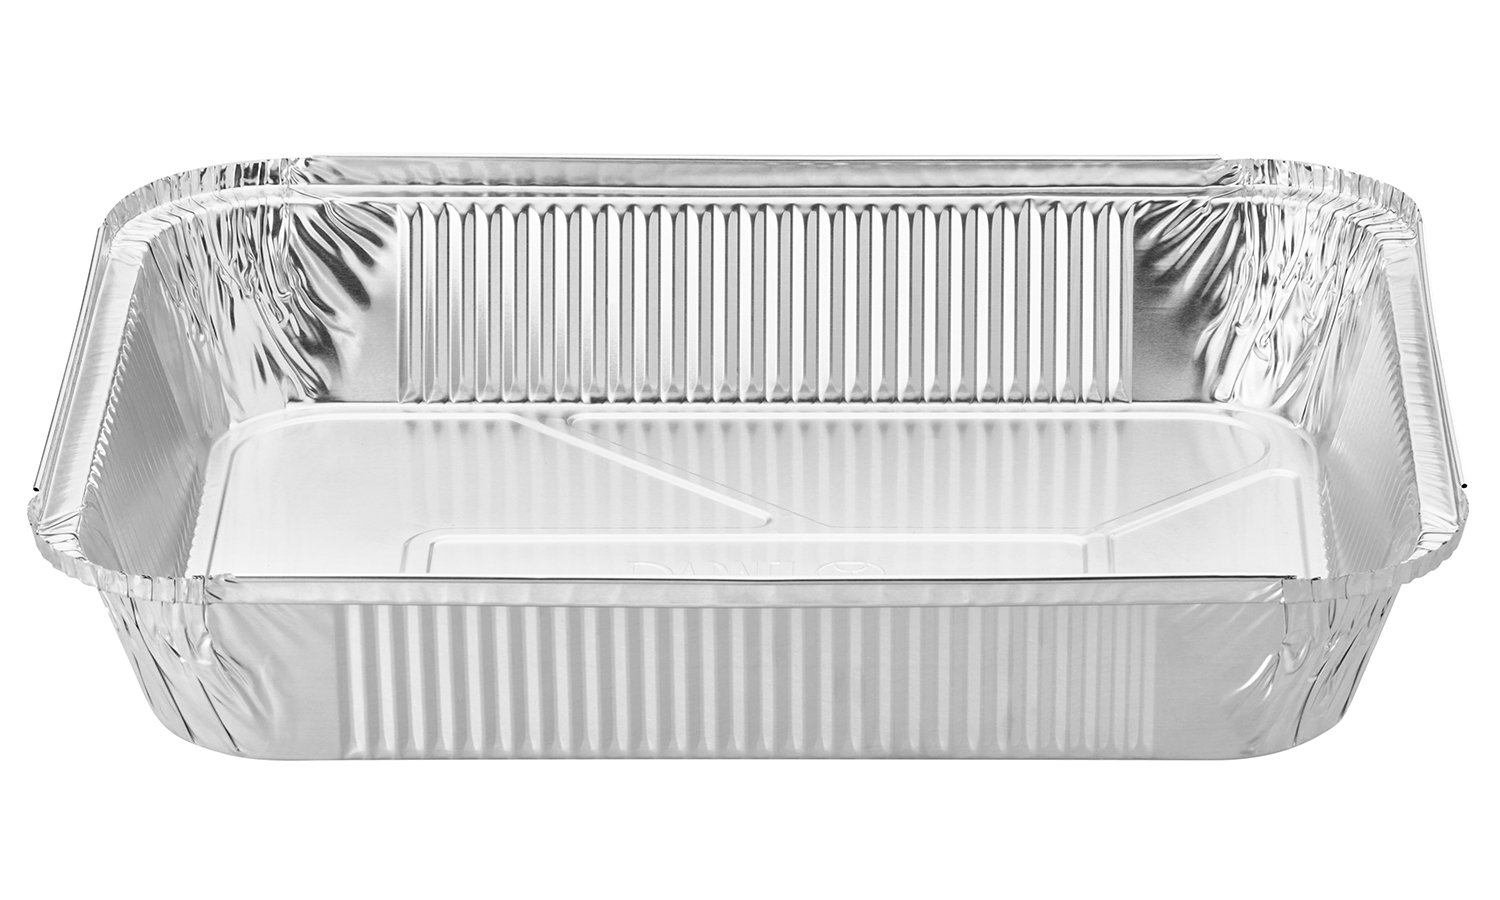 Bandejas de aluminio desechables ovales 54,7 x 35,8 cm